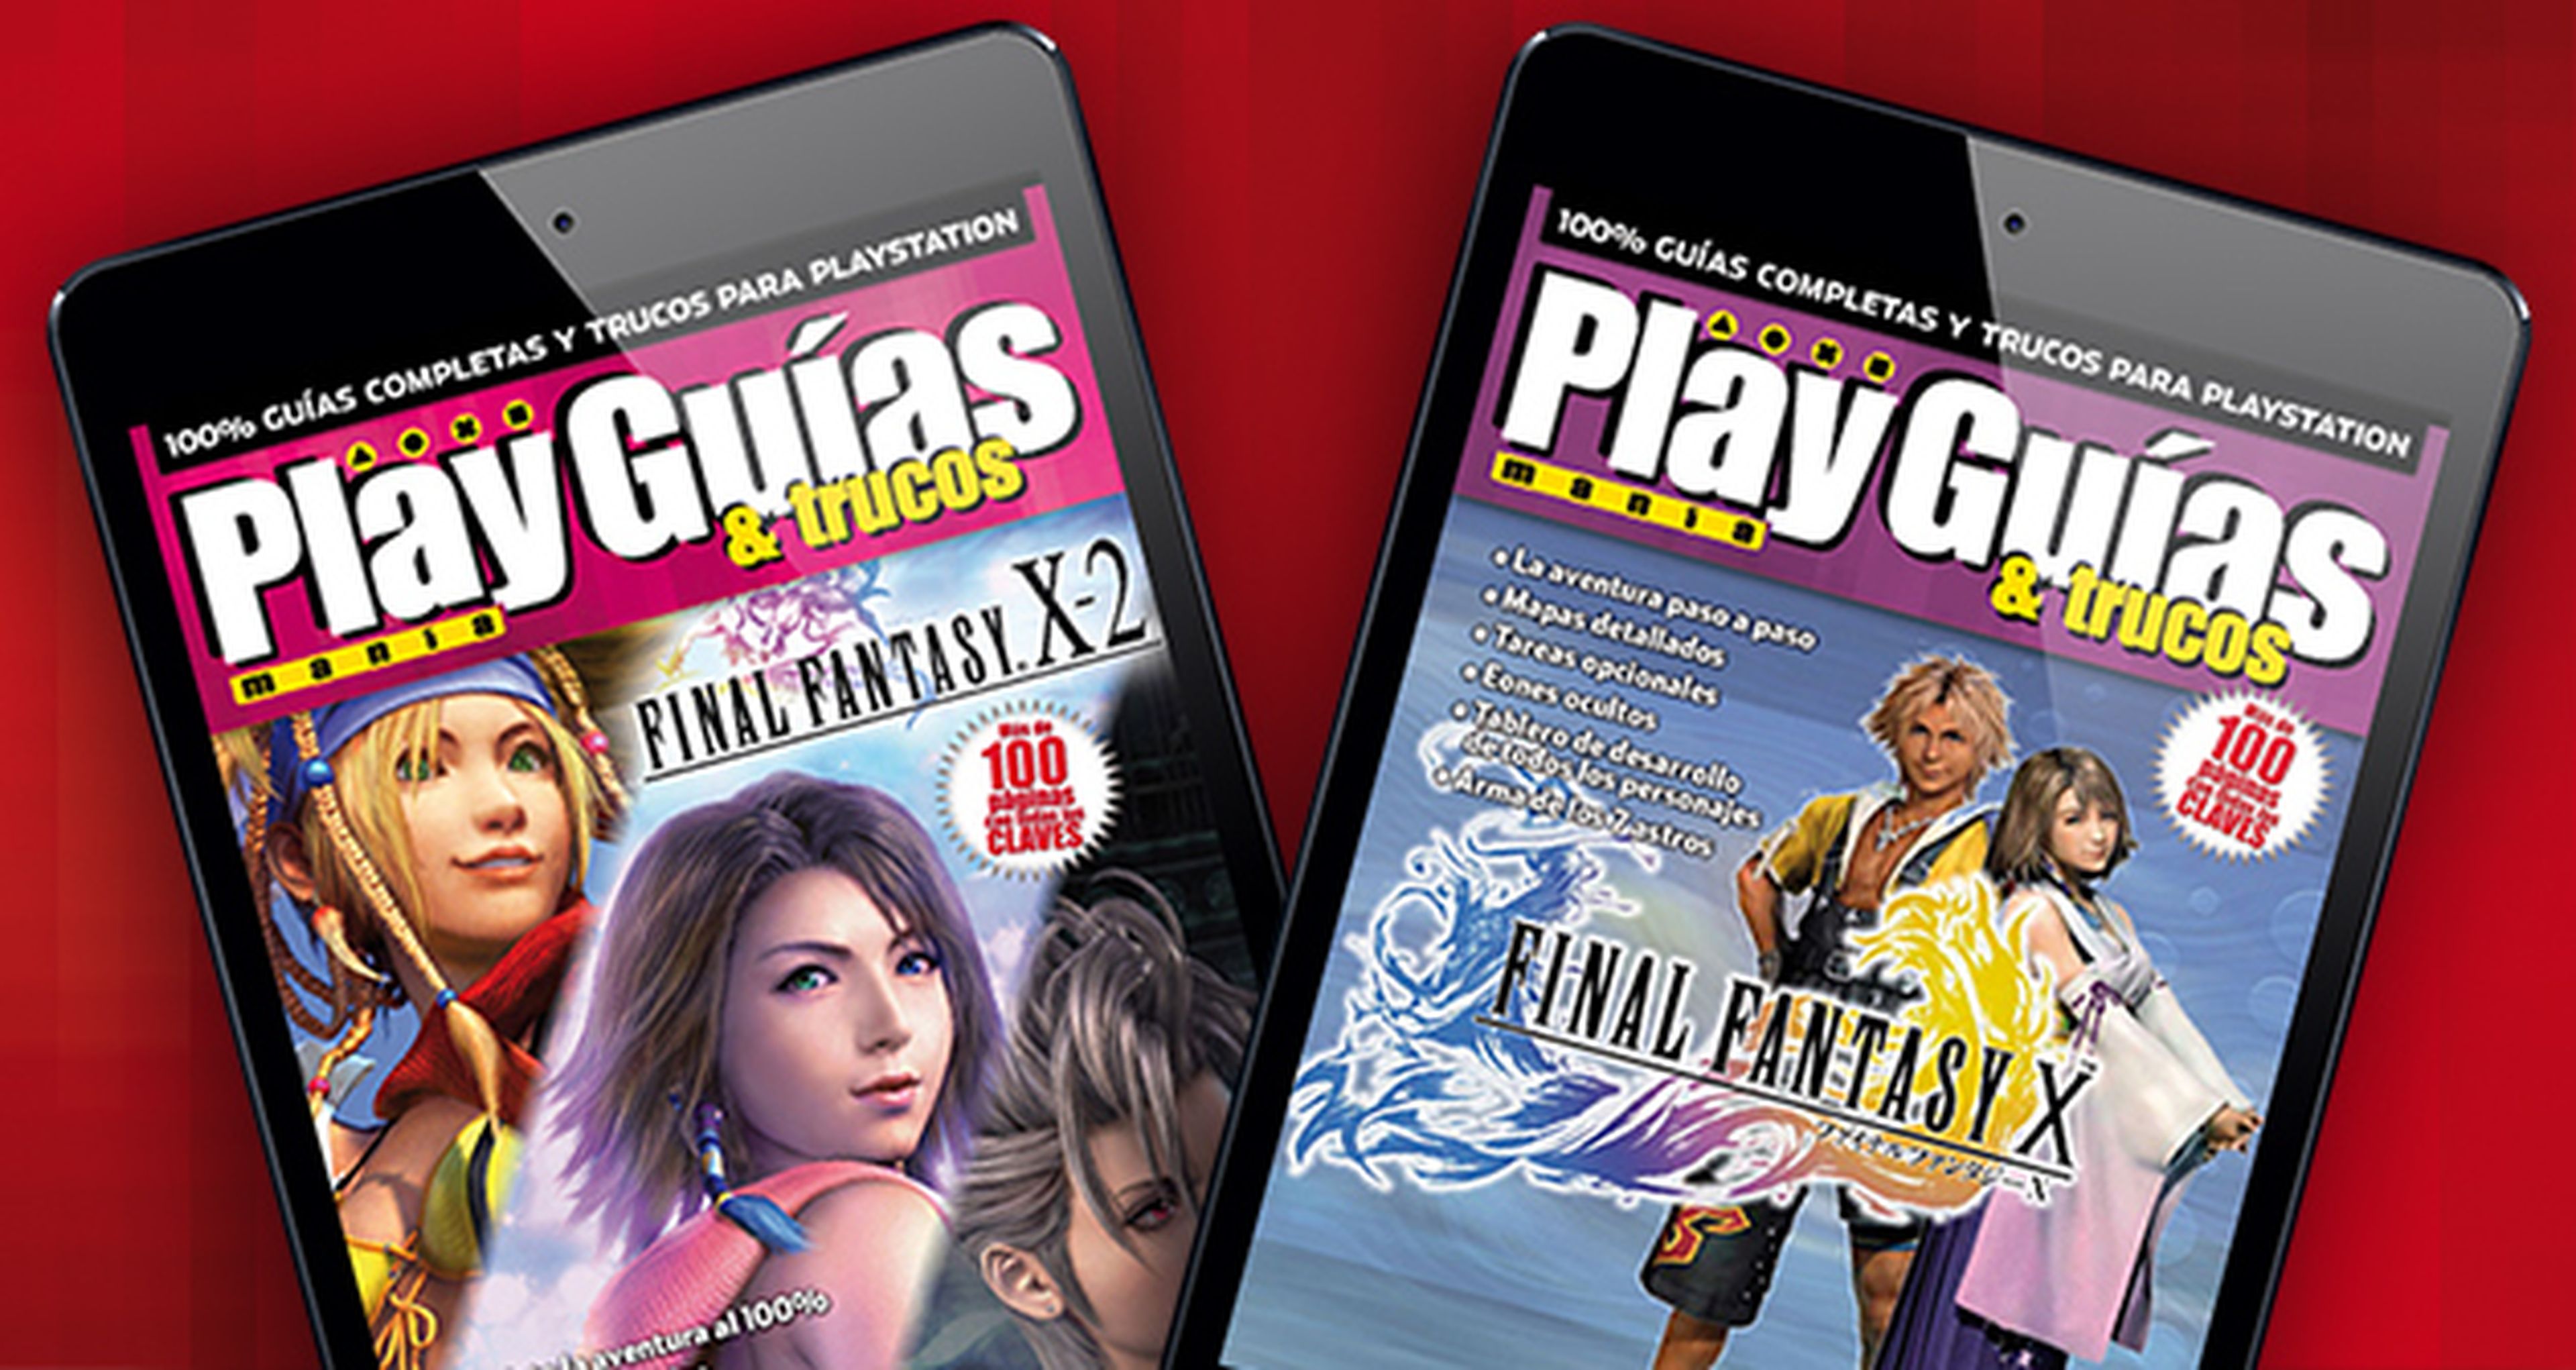 Guías completas para Final Fantasy X y Final Fantasy X-2